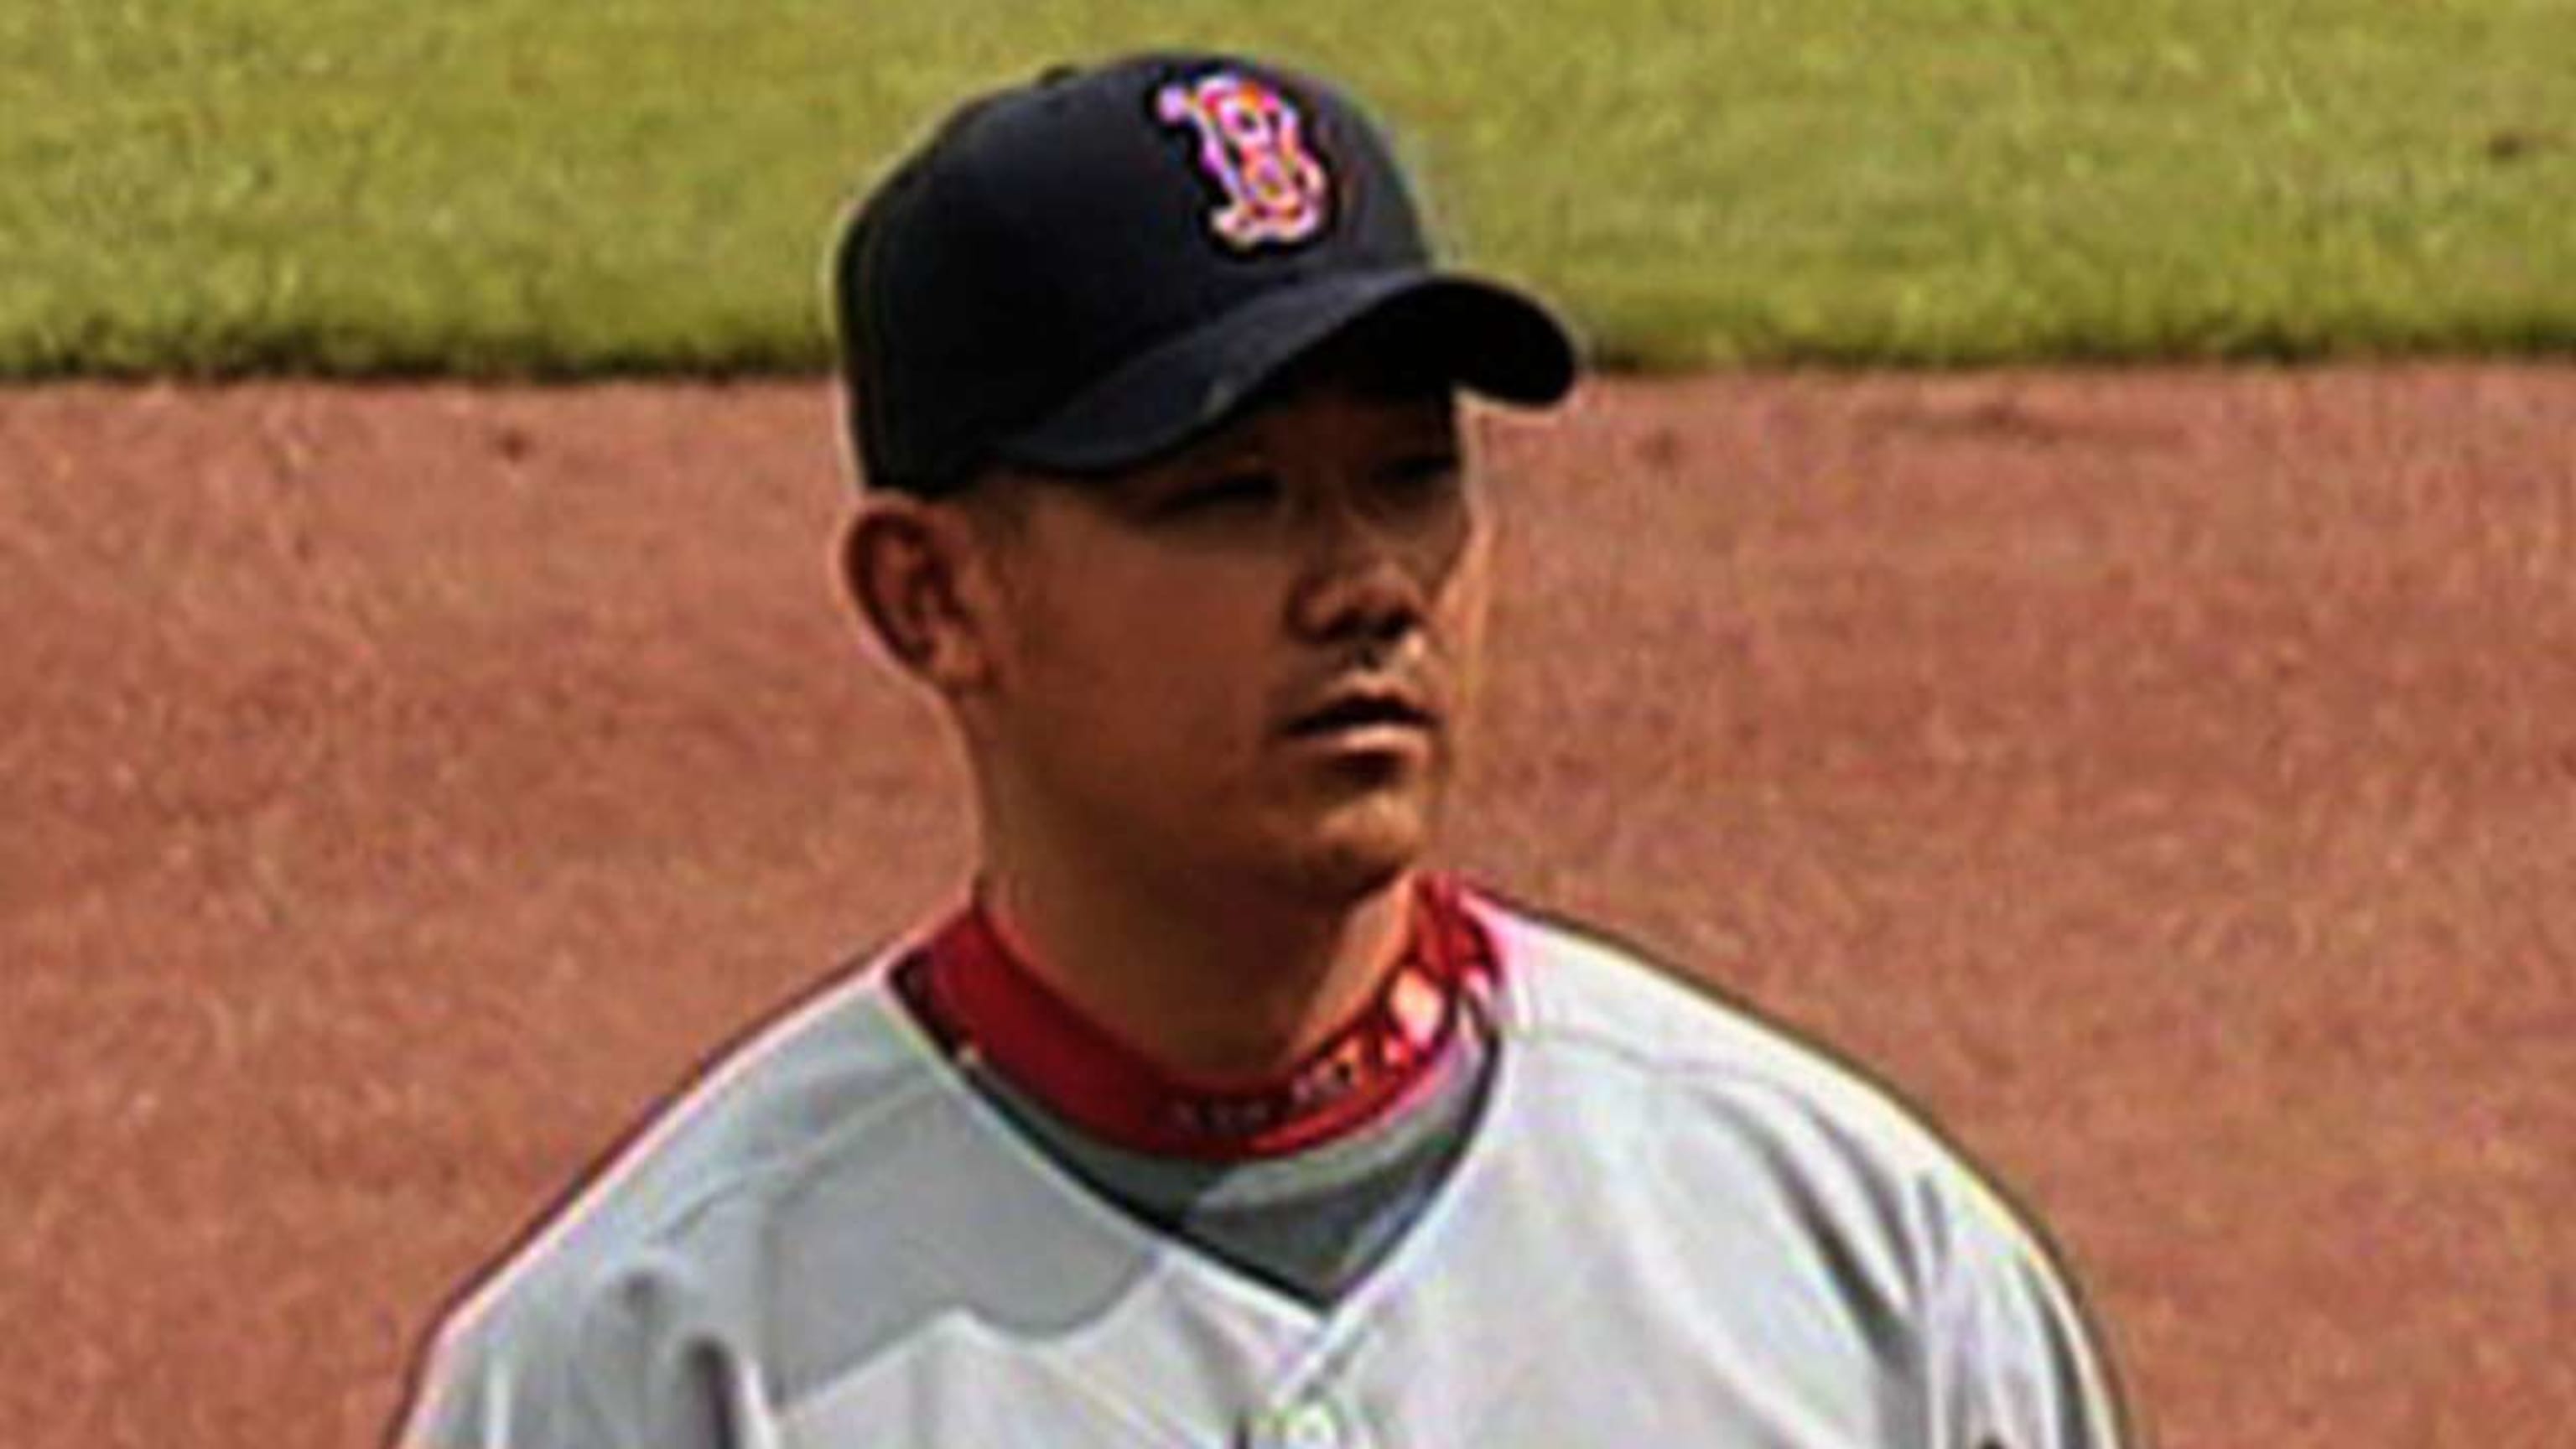 Baseball: Ex-major leaguer Matsuzaka to end career after 23 seasons